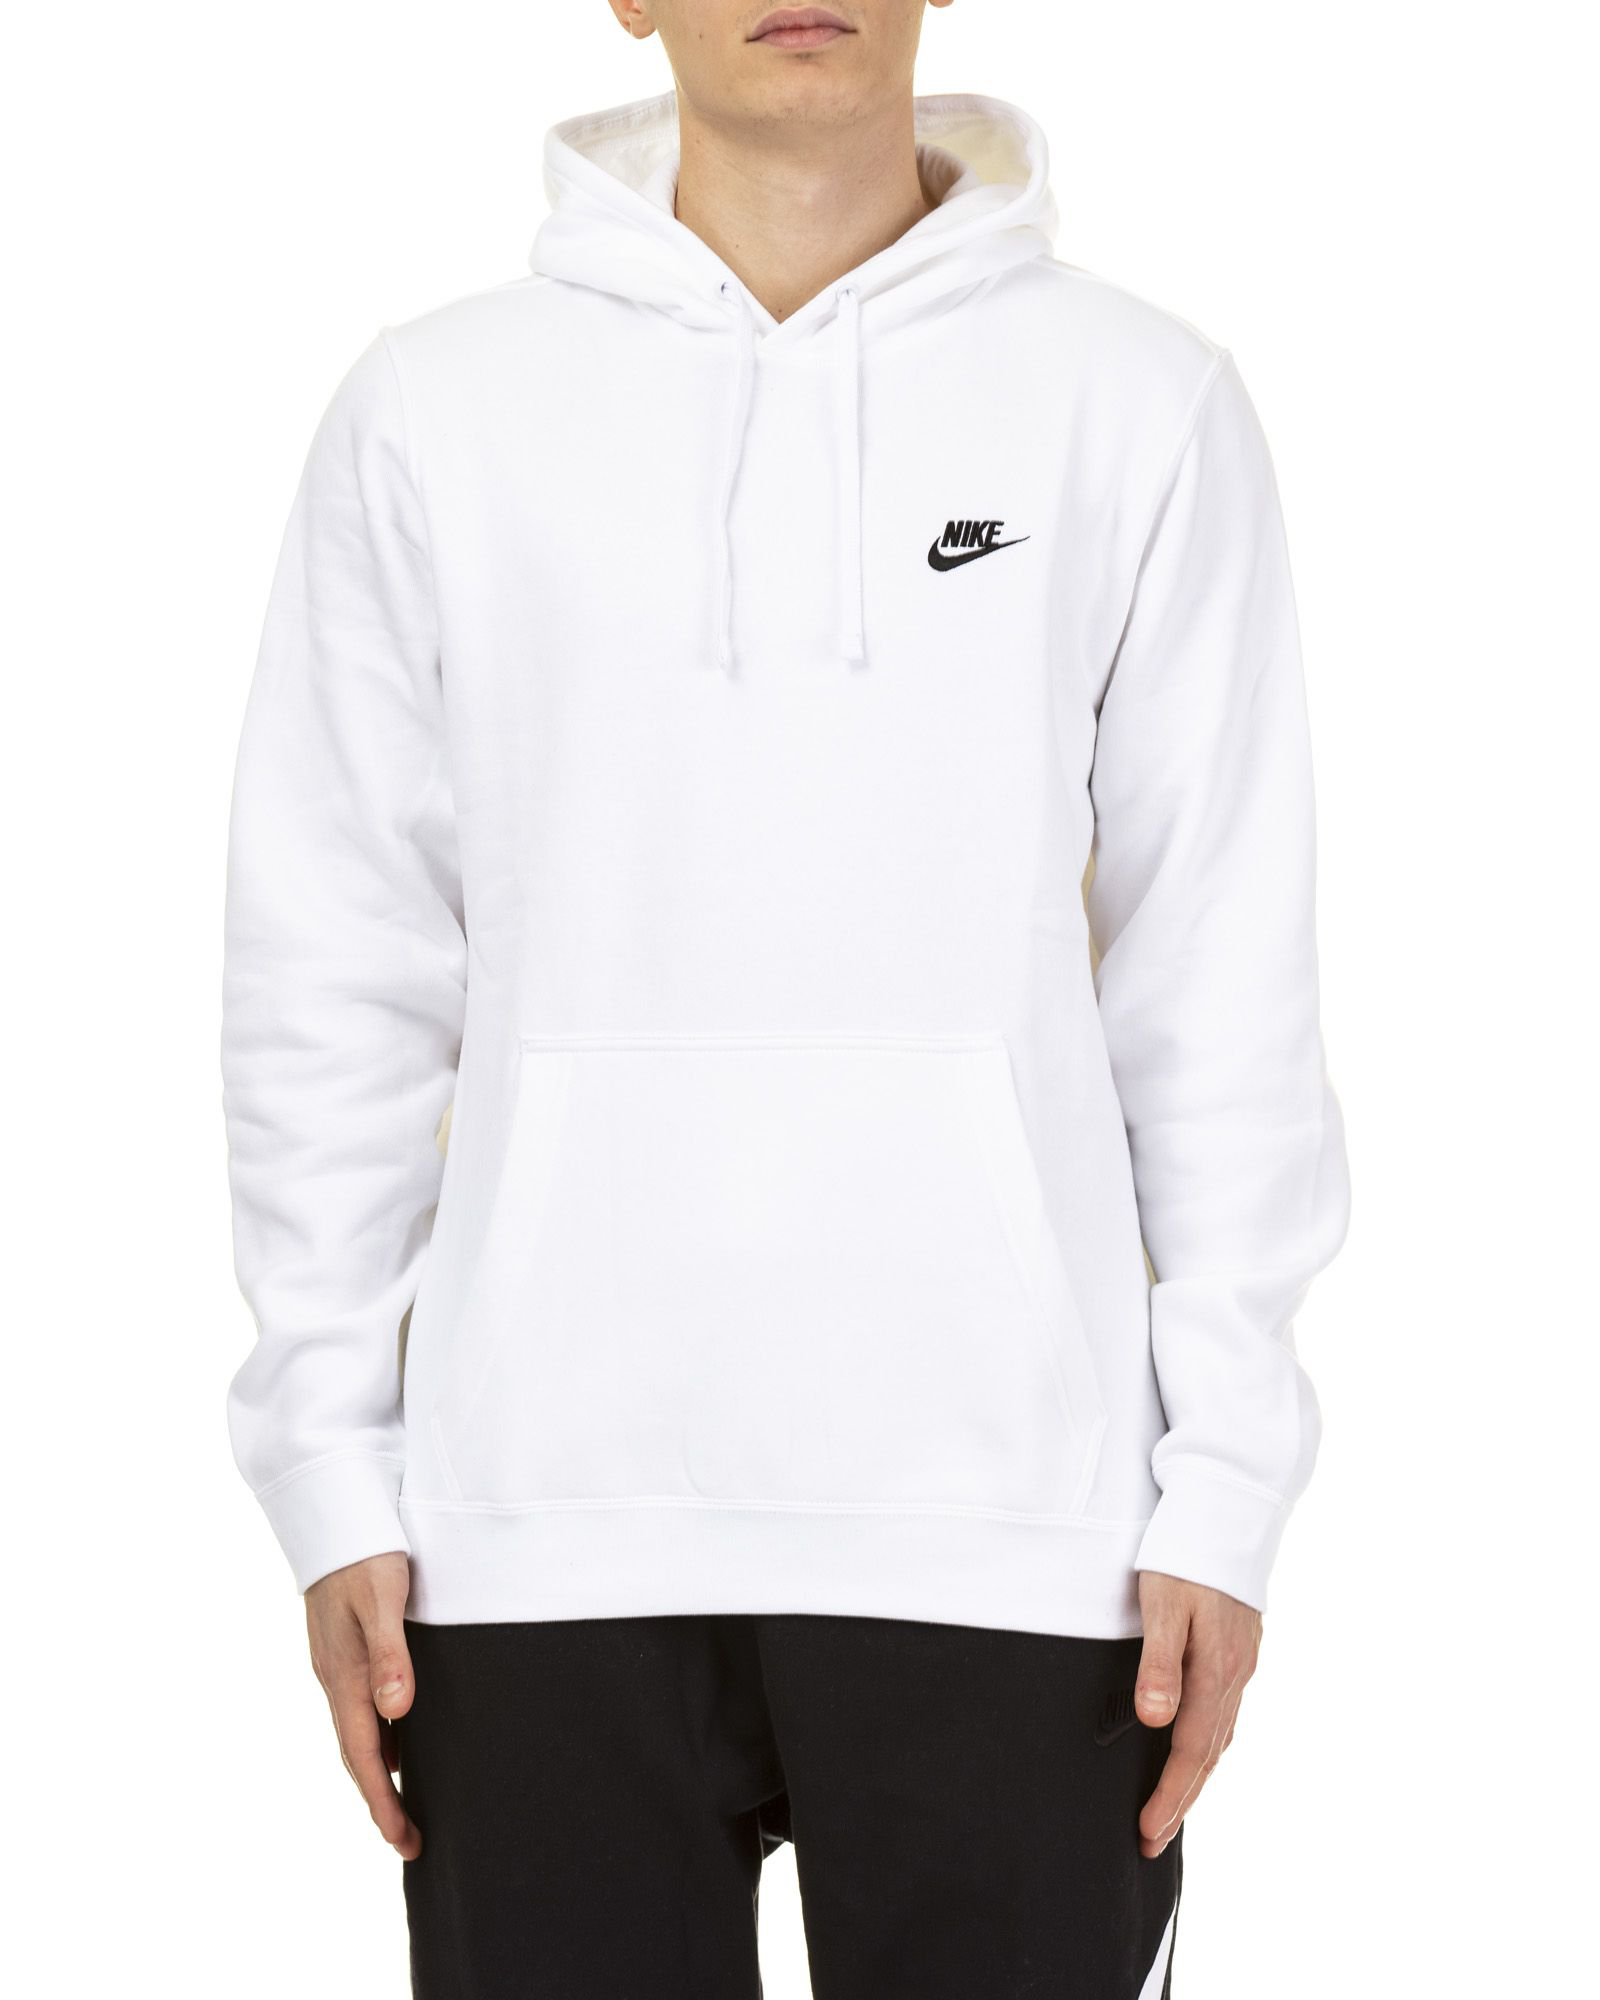 Nike Sweatshirt In White | ModeSens